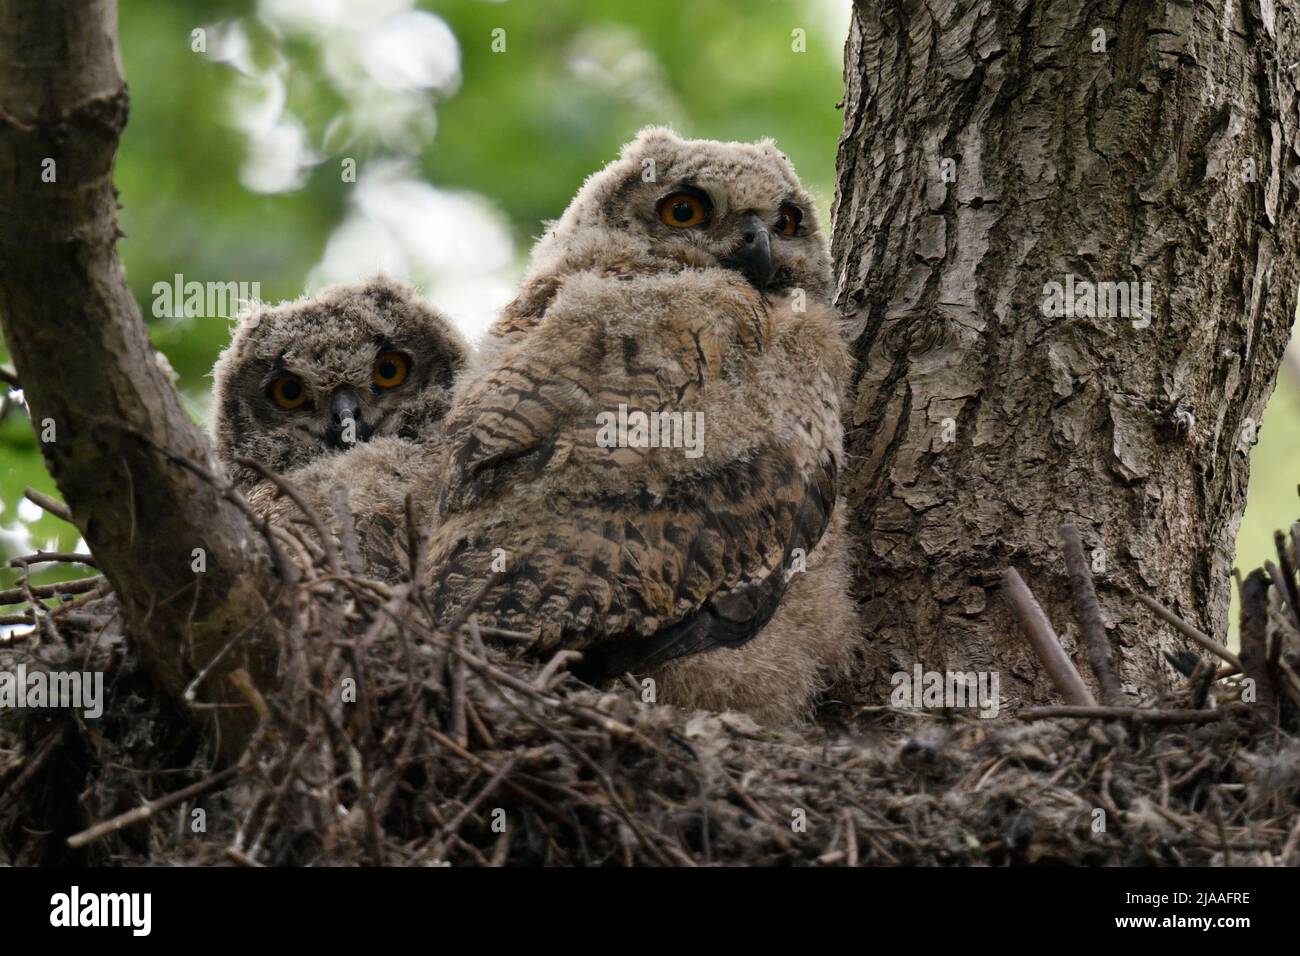 Gufo reale / Europaeische Uhus ( Bubo bubo ) prole, pulcini, owlets, giovani gufi Appollaiati in nido in alto in un albero, la fauna selvatica, l'Europa. Foto Stock